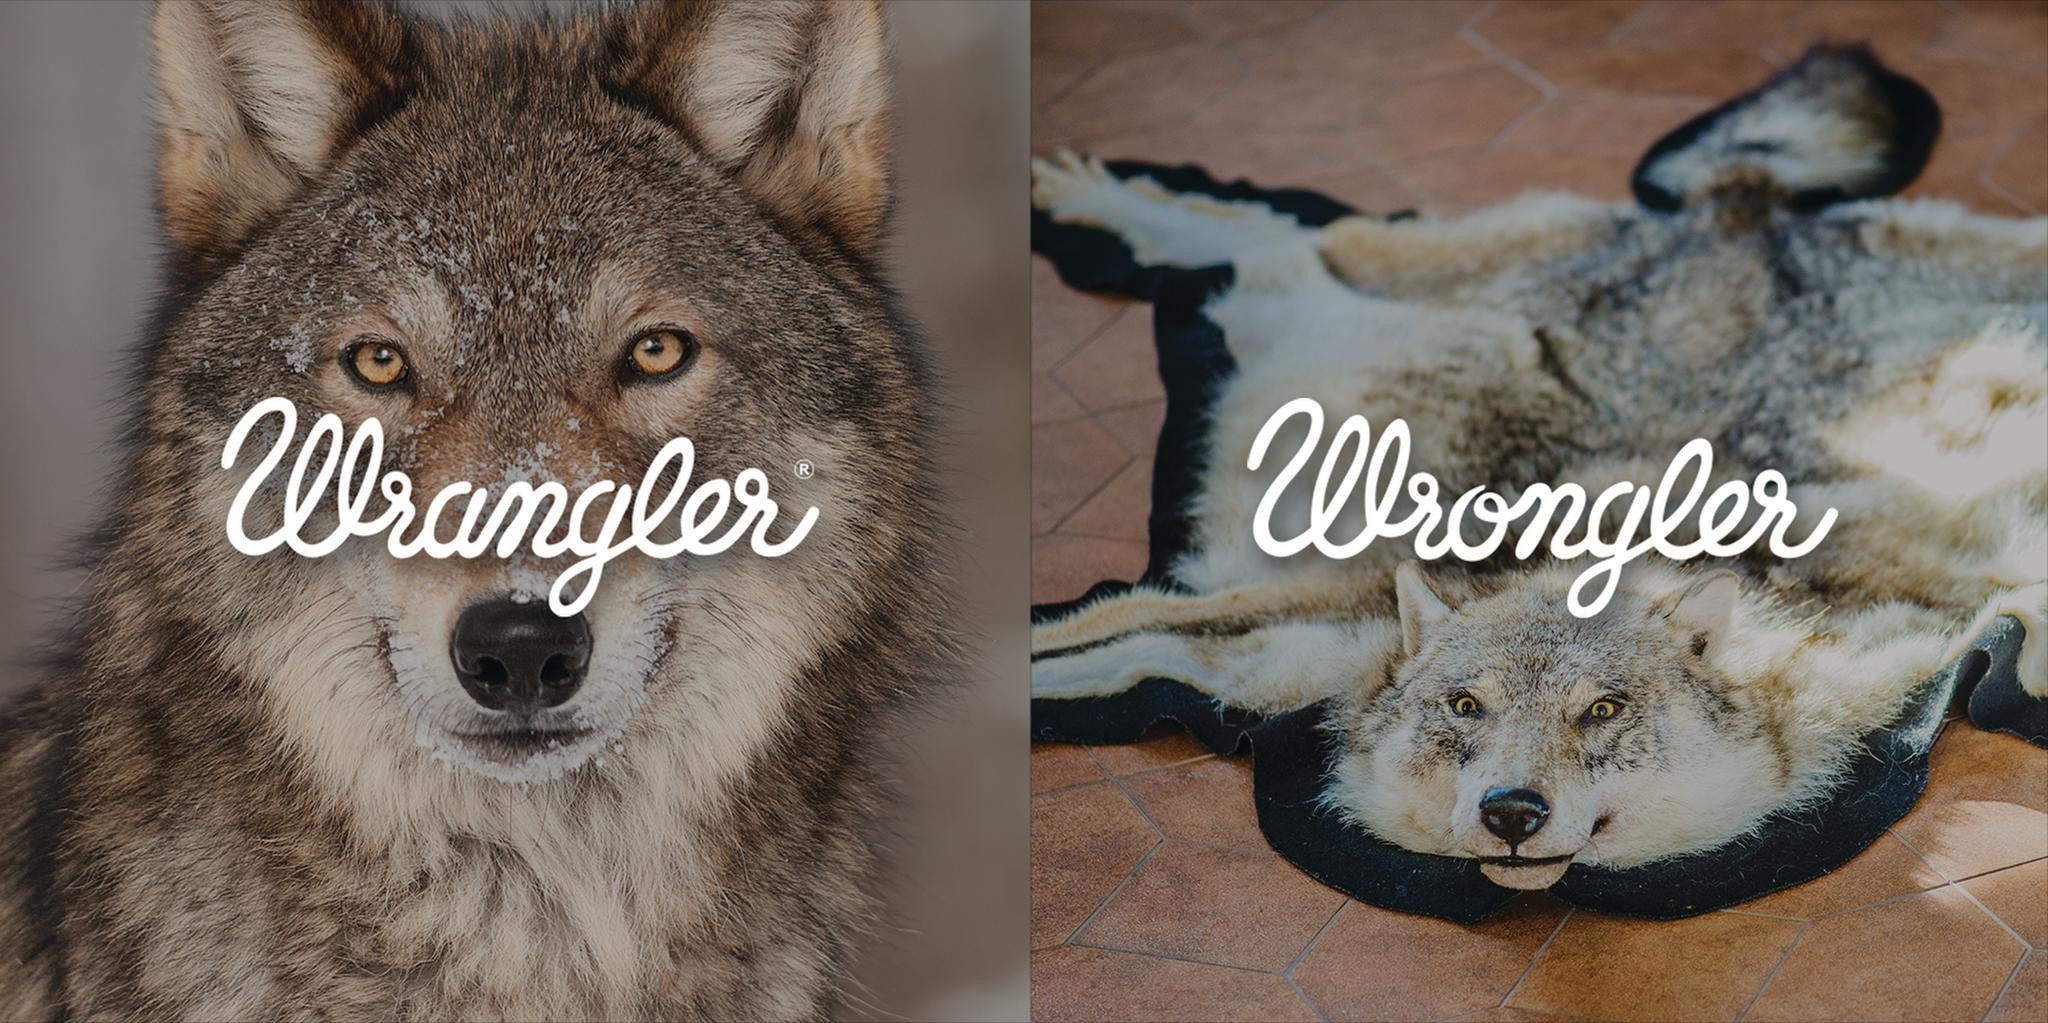 Wrangler/Wrongler